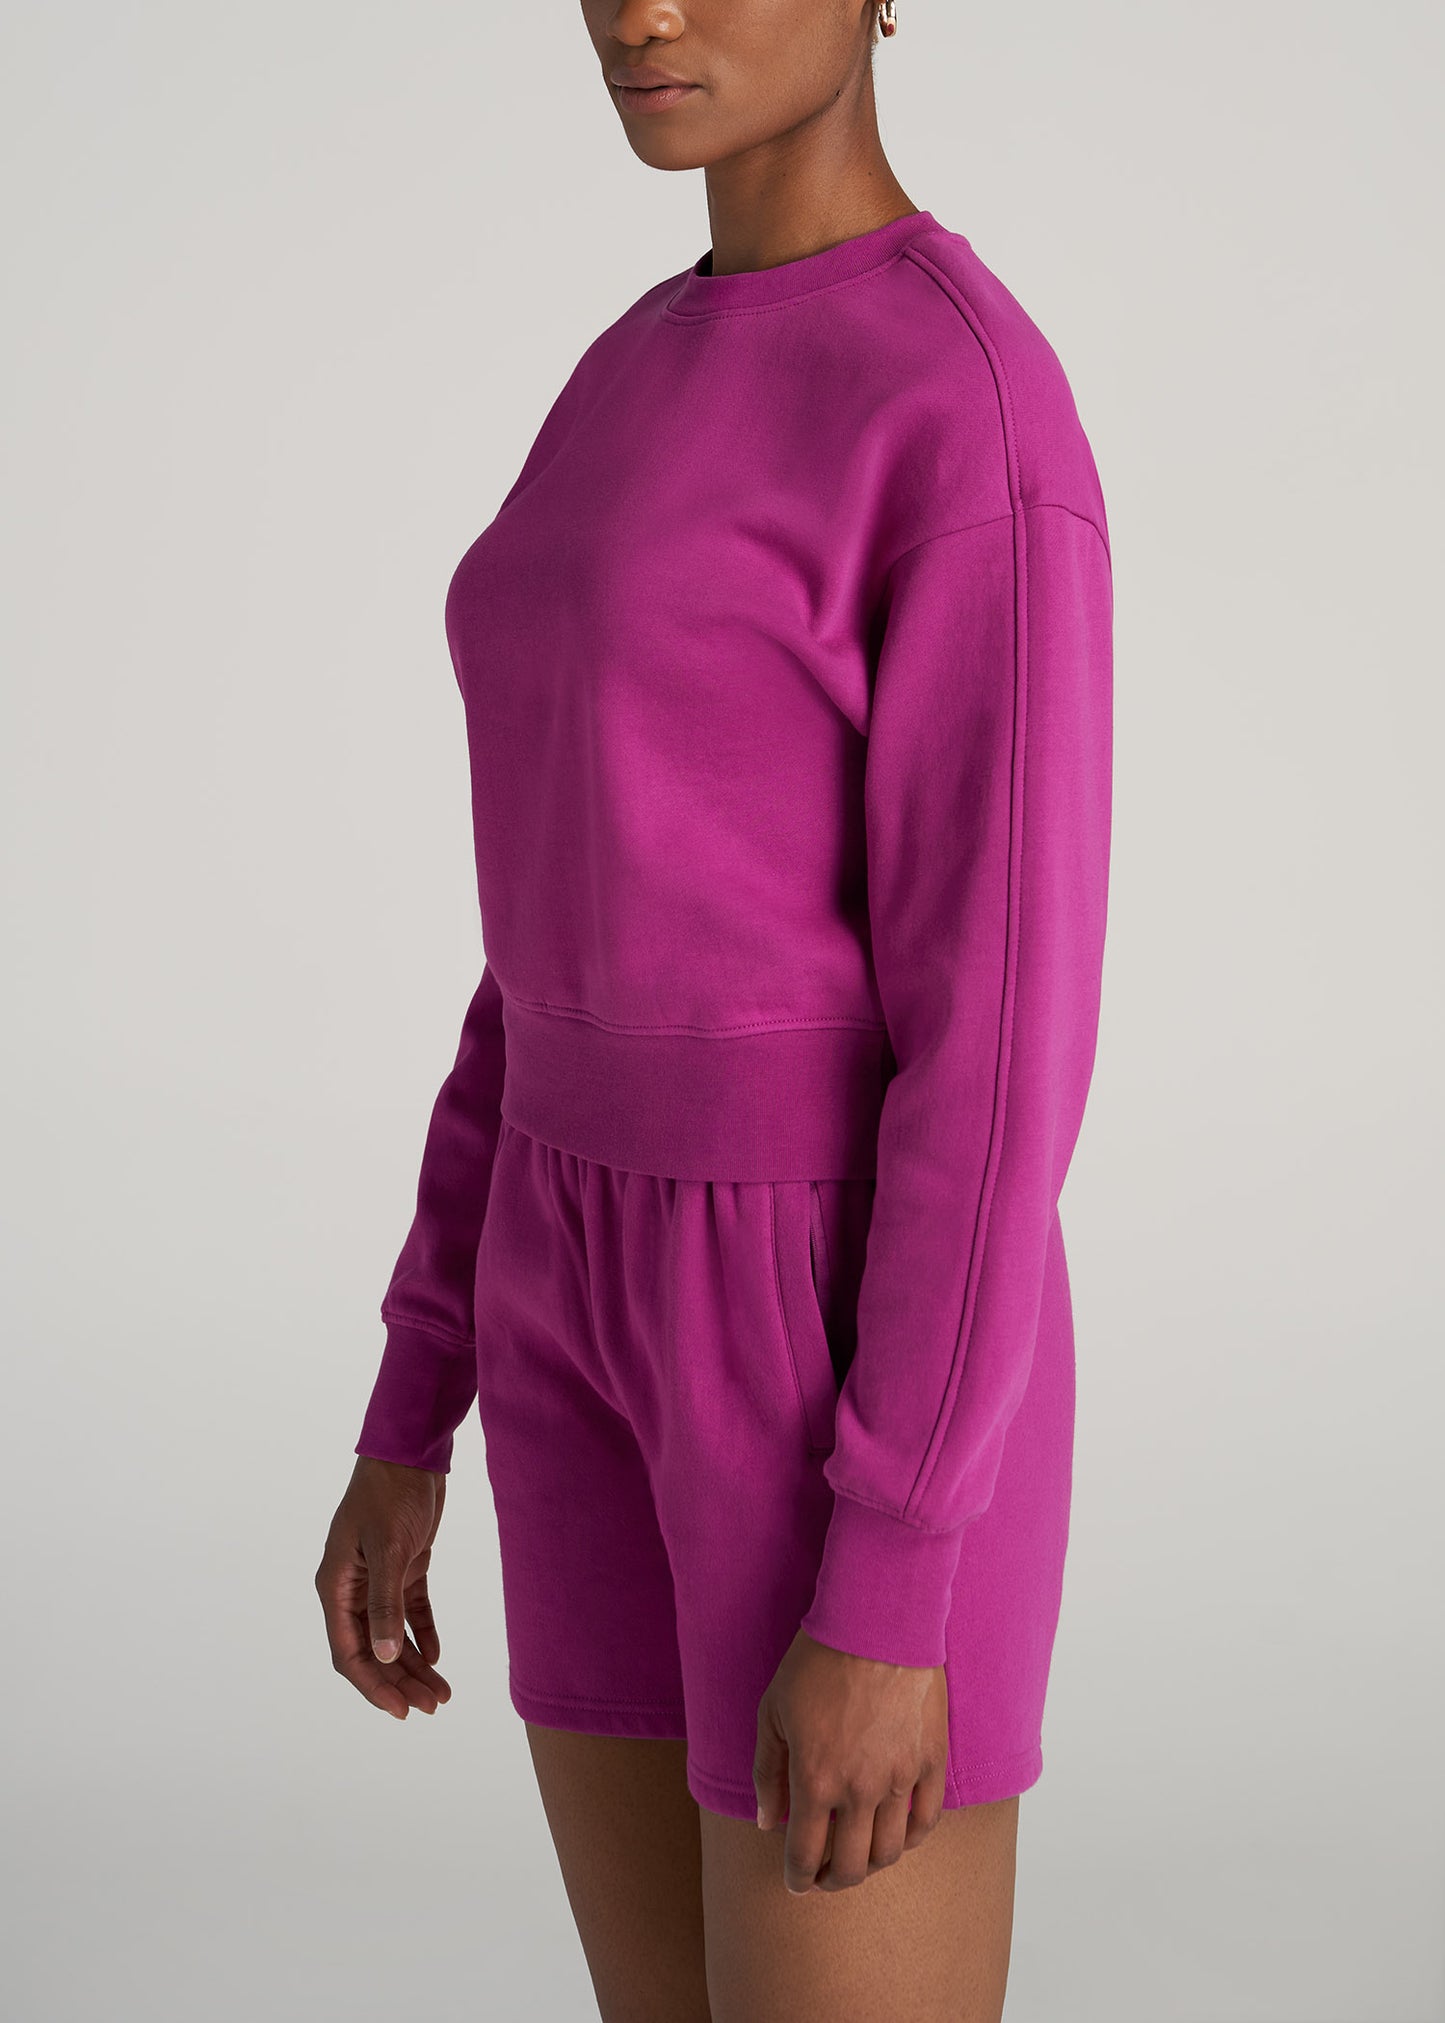    American-Tall-Women-WKND-Fleece-Cropped-Crew-Sweatshirt-Pink-Orchid-side